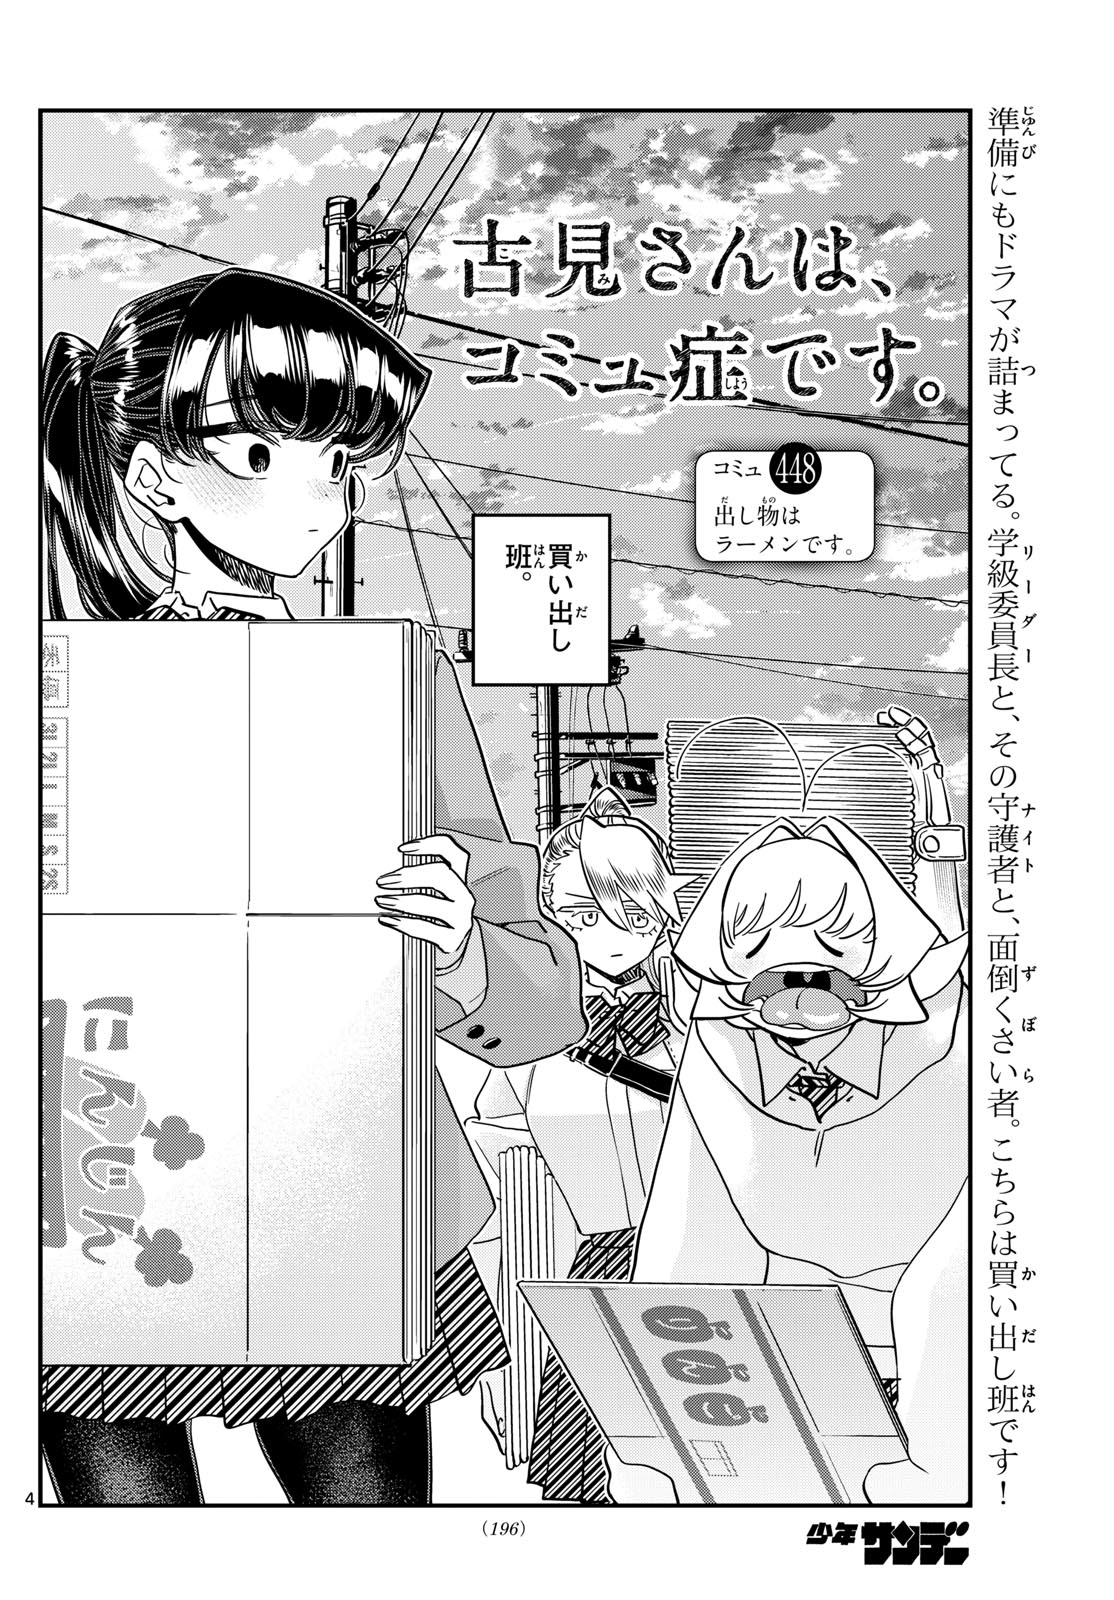 Komi-san wa Komyushou Desu - Chapter 448 - Page 4